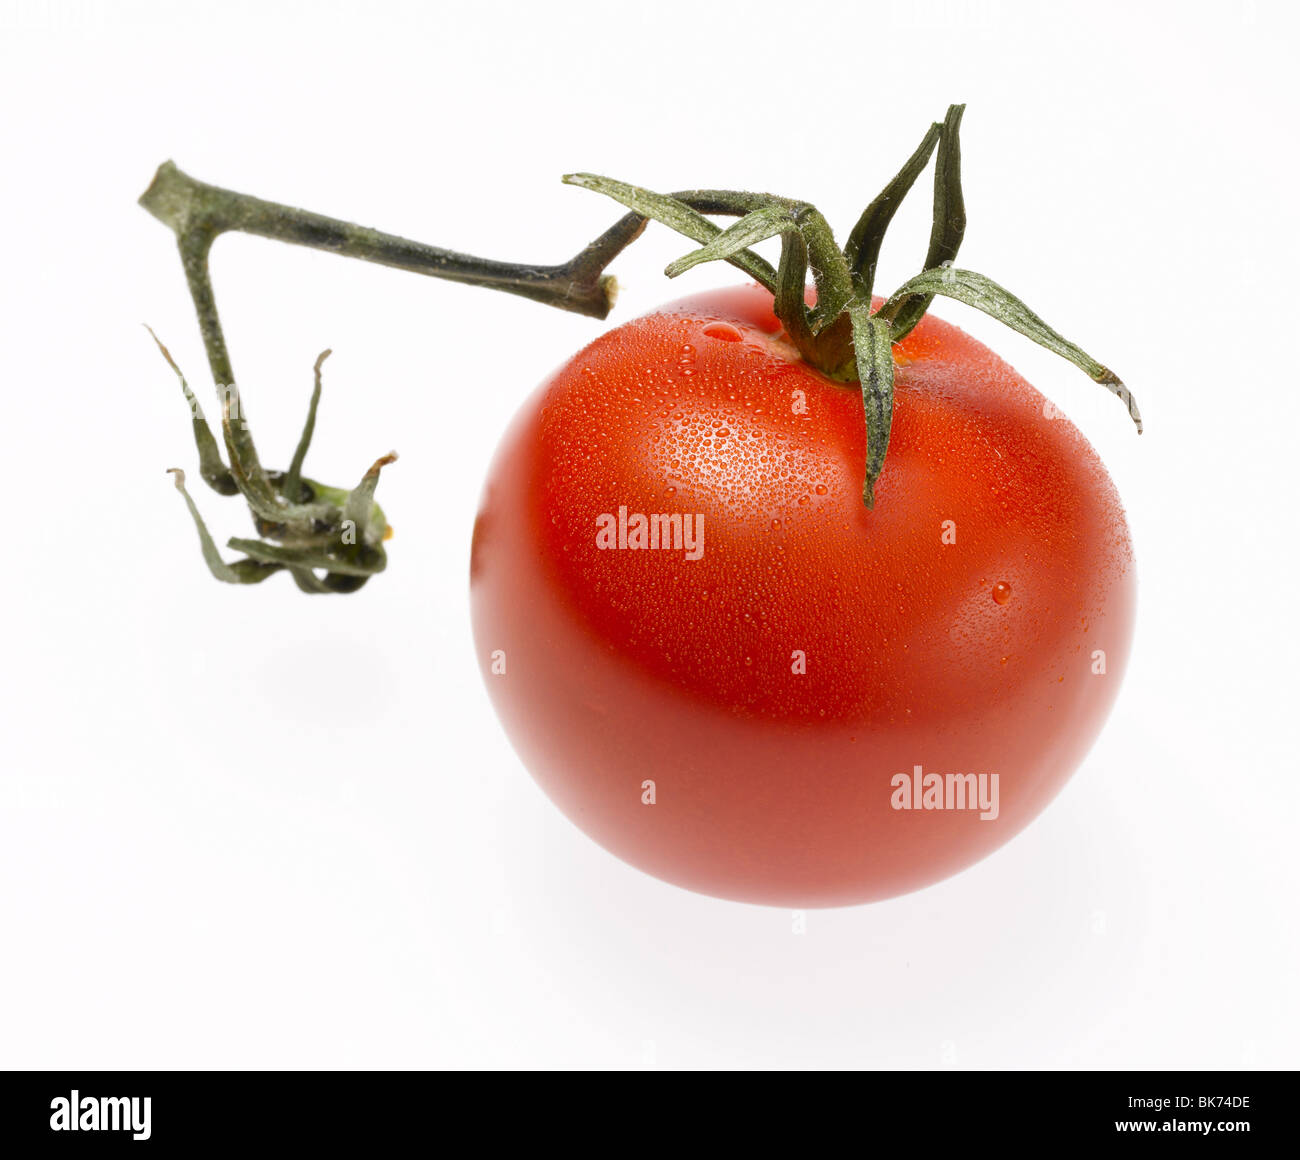 Tomate cerise rouge vert avec haut et tige sur fond blanc Banque D'Images